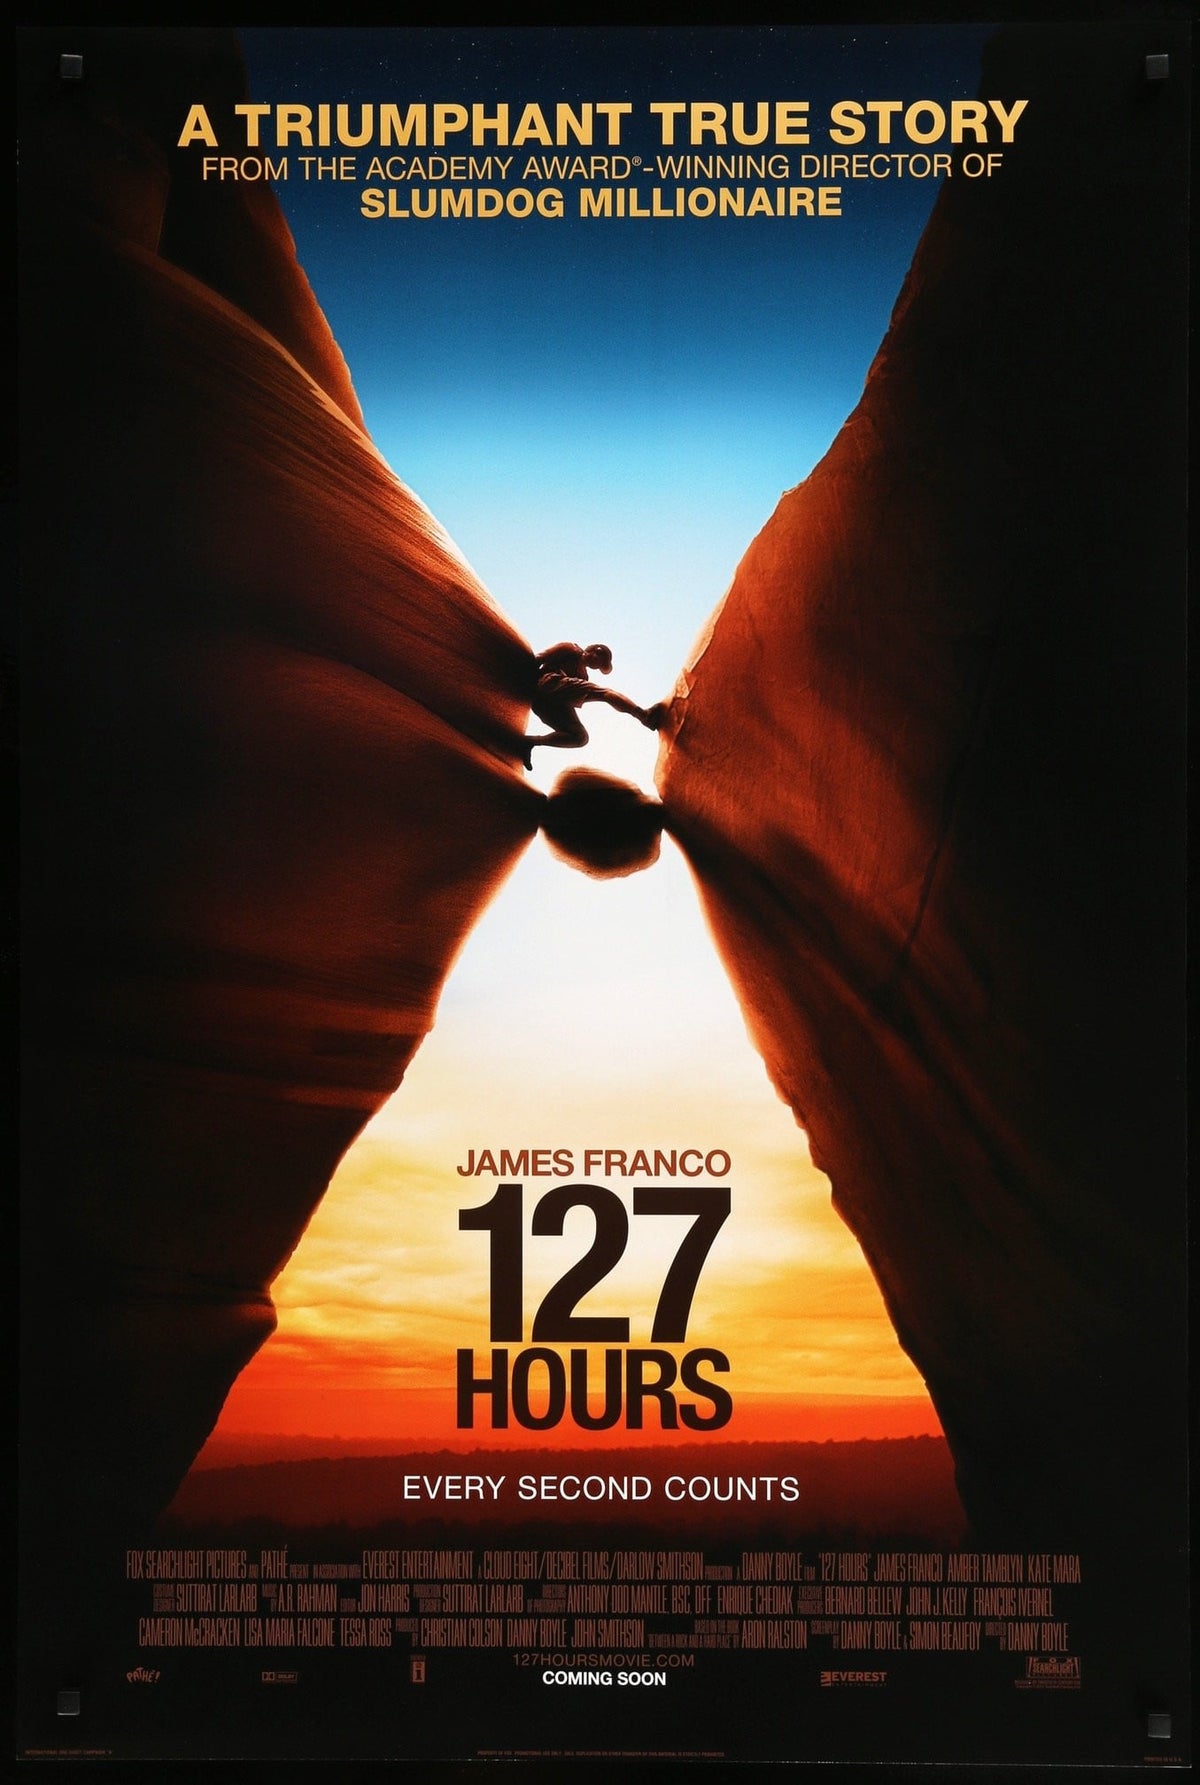 127 Hours (2010) original movie poster for sale at Original Film Art